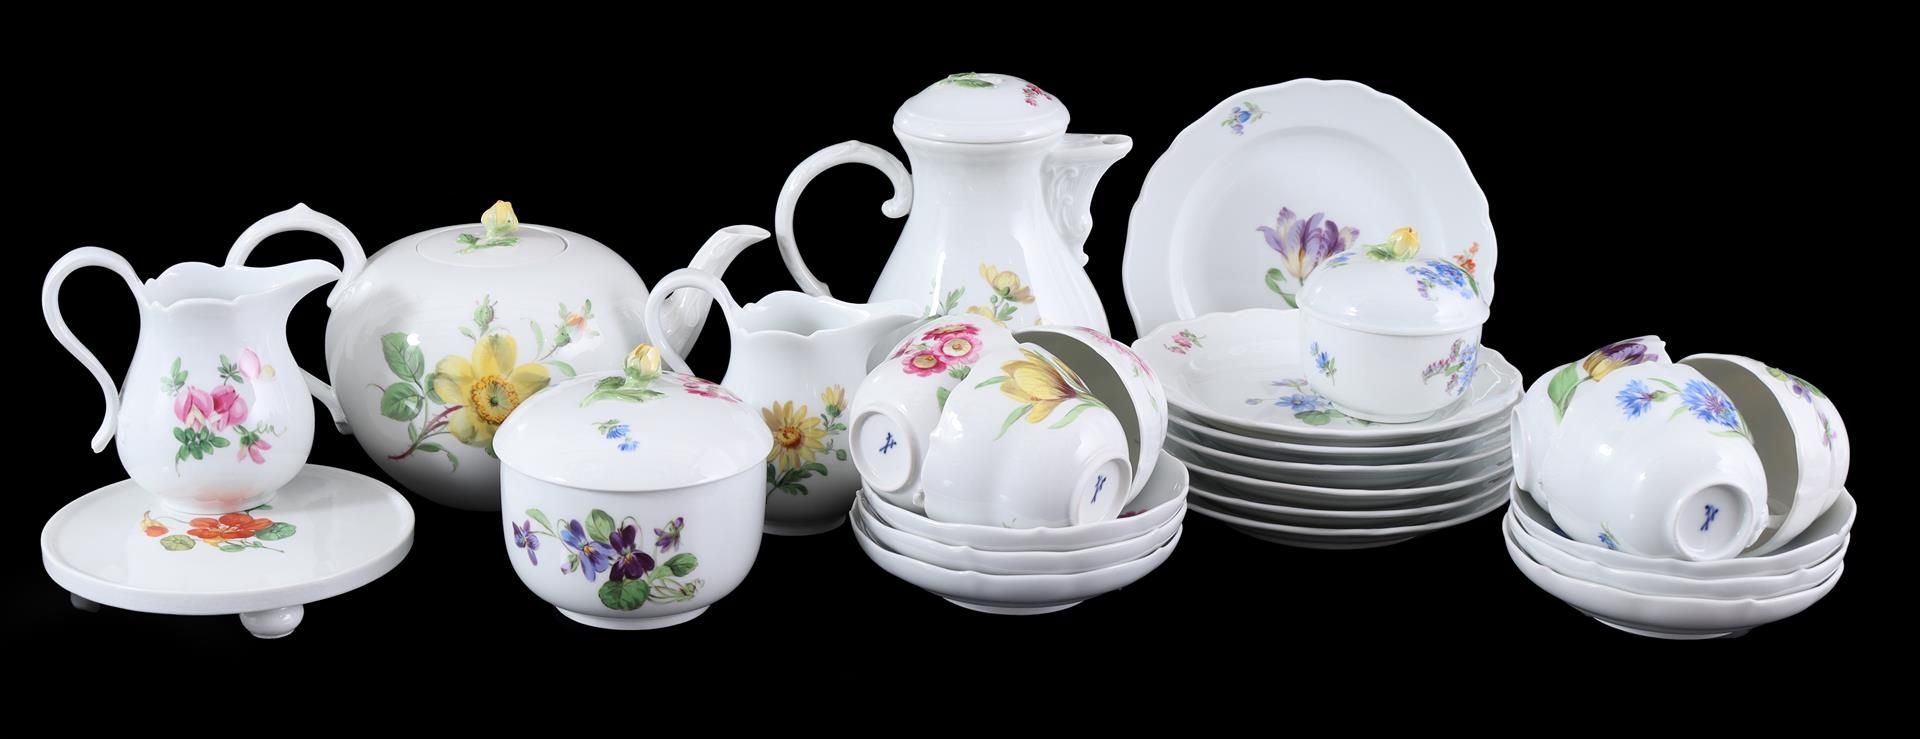 Meissen porcelain crockery